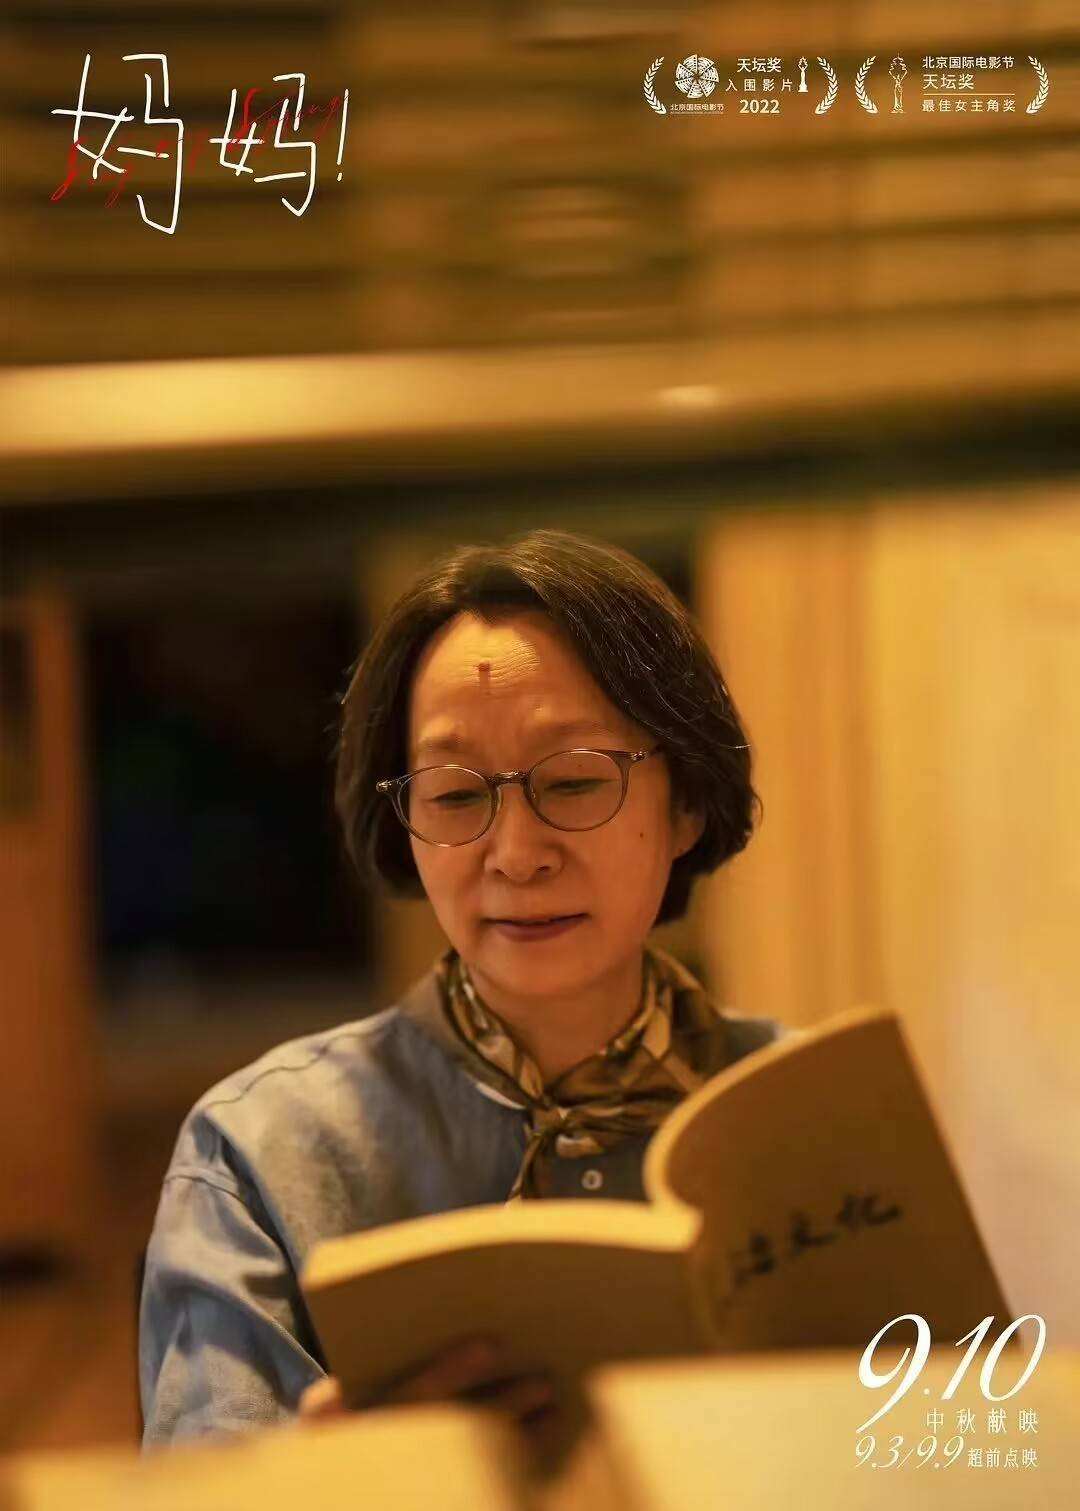 奚美娟获第35届中国电影金鸡奖最佳女主角奖